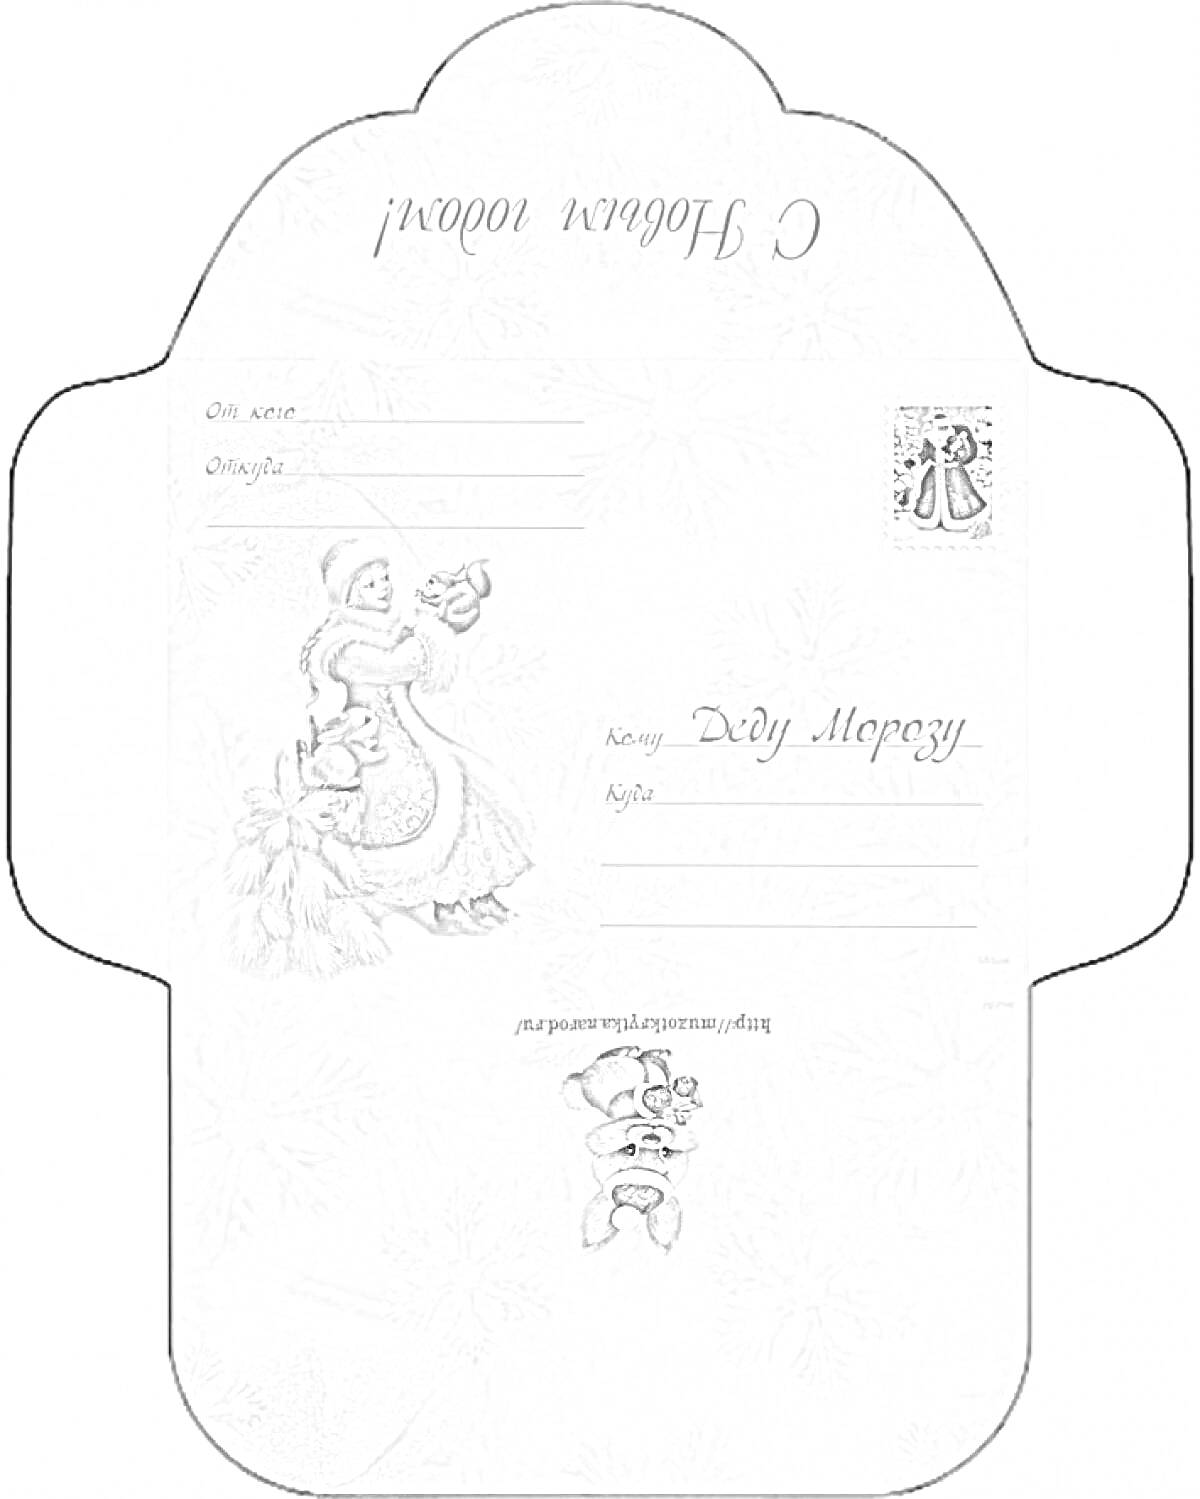 Конверт для письма Деду Морозу с изображением Снегурочки, адресными полями и иллюстрацией медвежонка